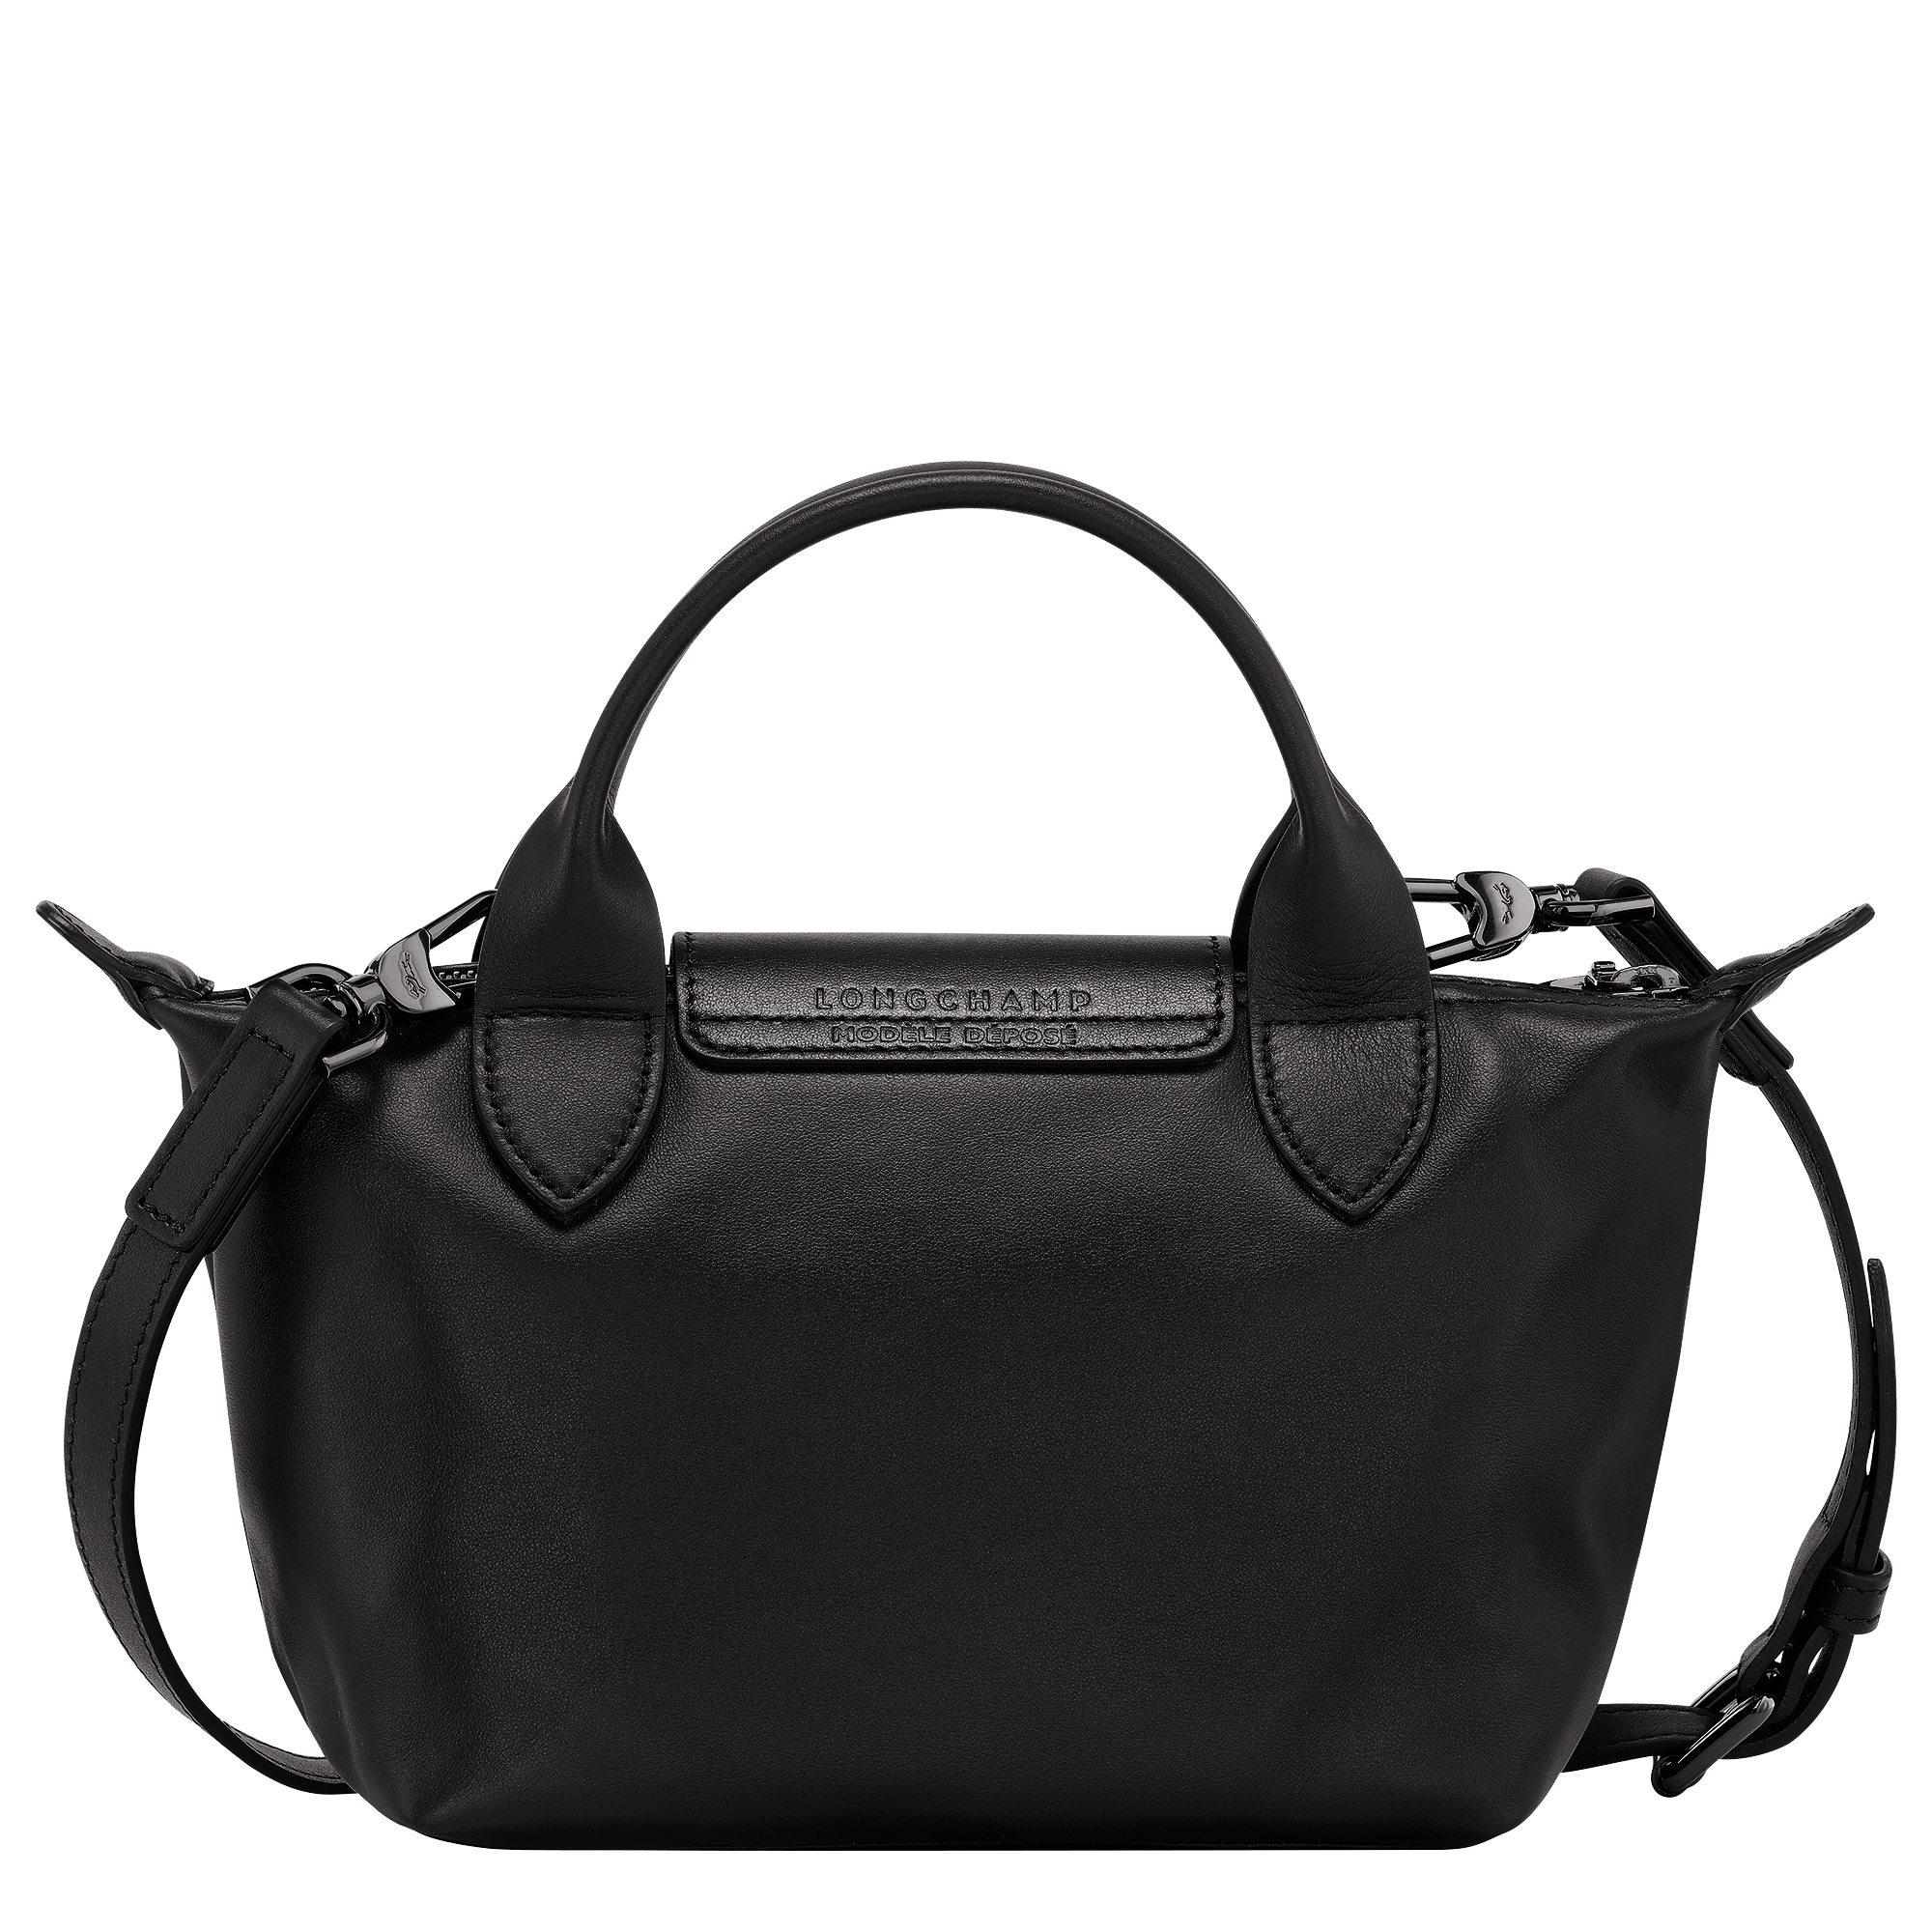 Longchamp - Small Leather Shoulder Bag Black